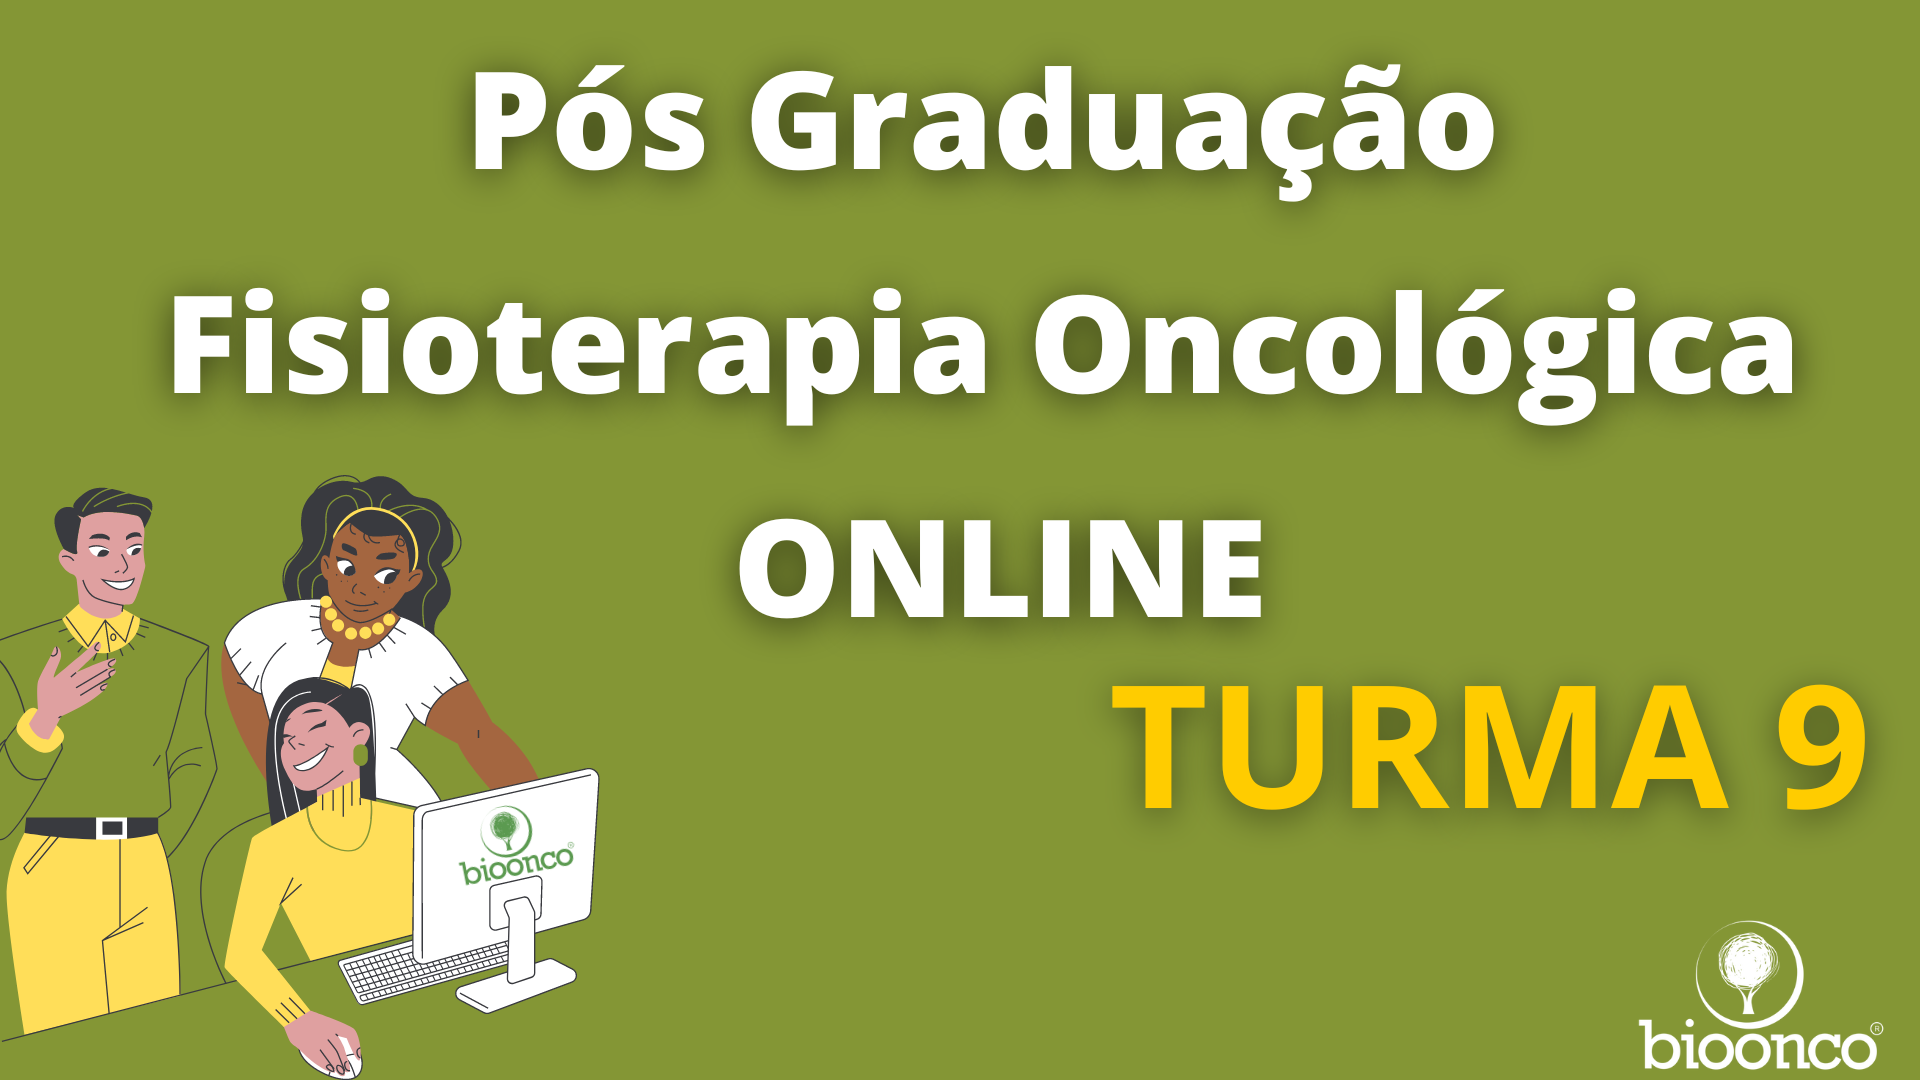 Pós Graduação em Fisioterapia Oncológica ONLINE (TURMA 9)